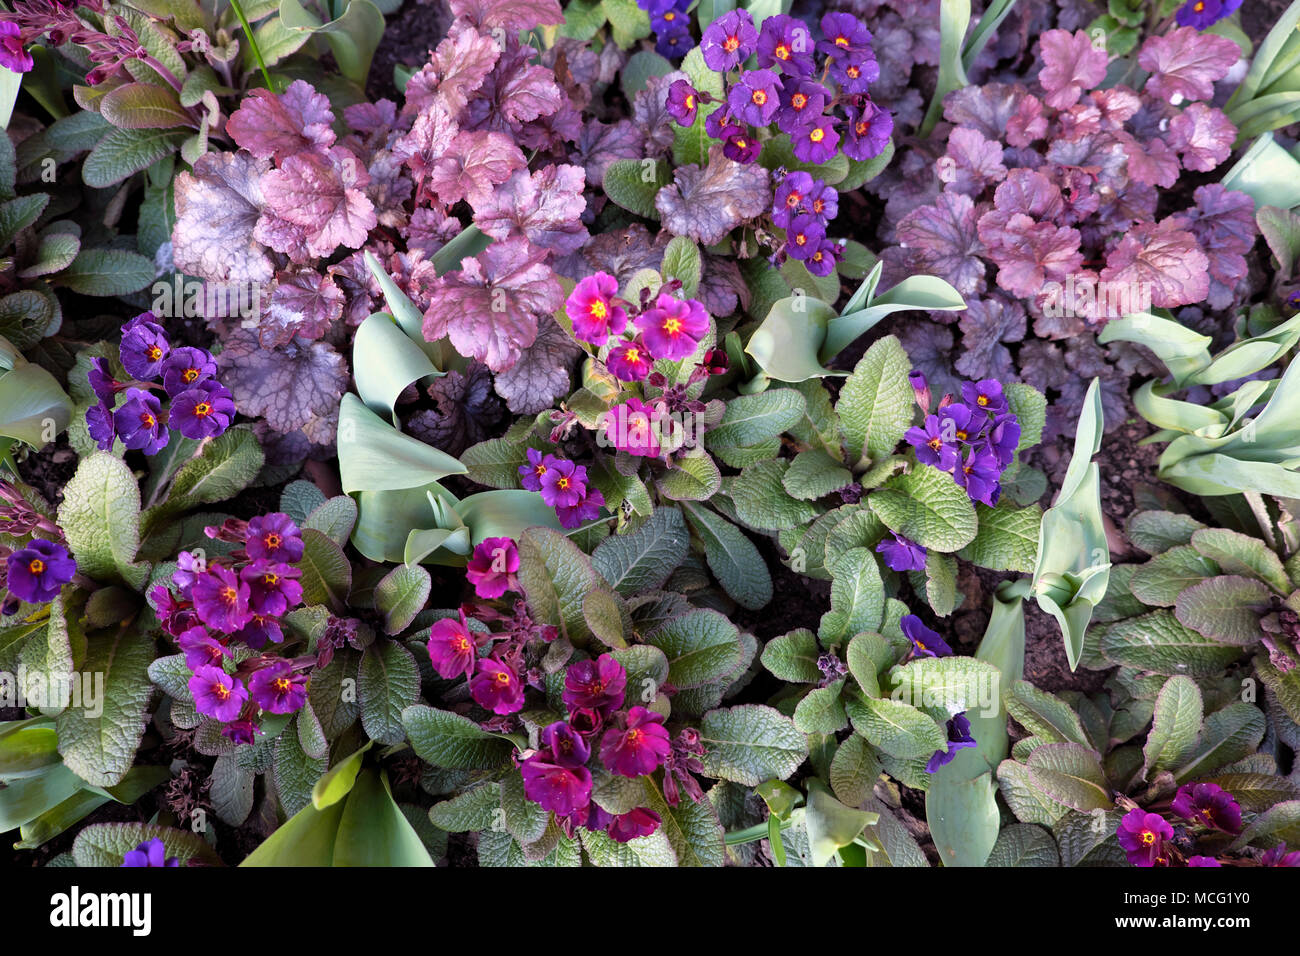 Plantas heuchera púrpura en flor creciendo junto con flores de polianthus púrpura y magenta en un jardín de primavera frontera Londres Inglaterra Reino Unido KATHY DEWITT Foto de stock